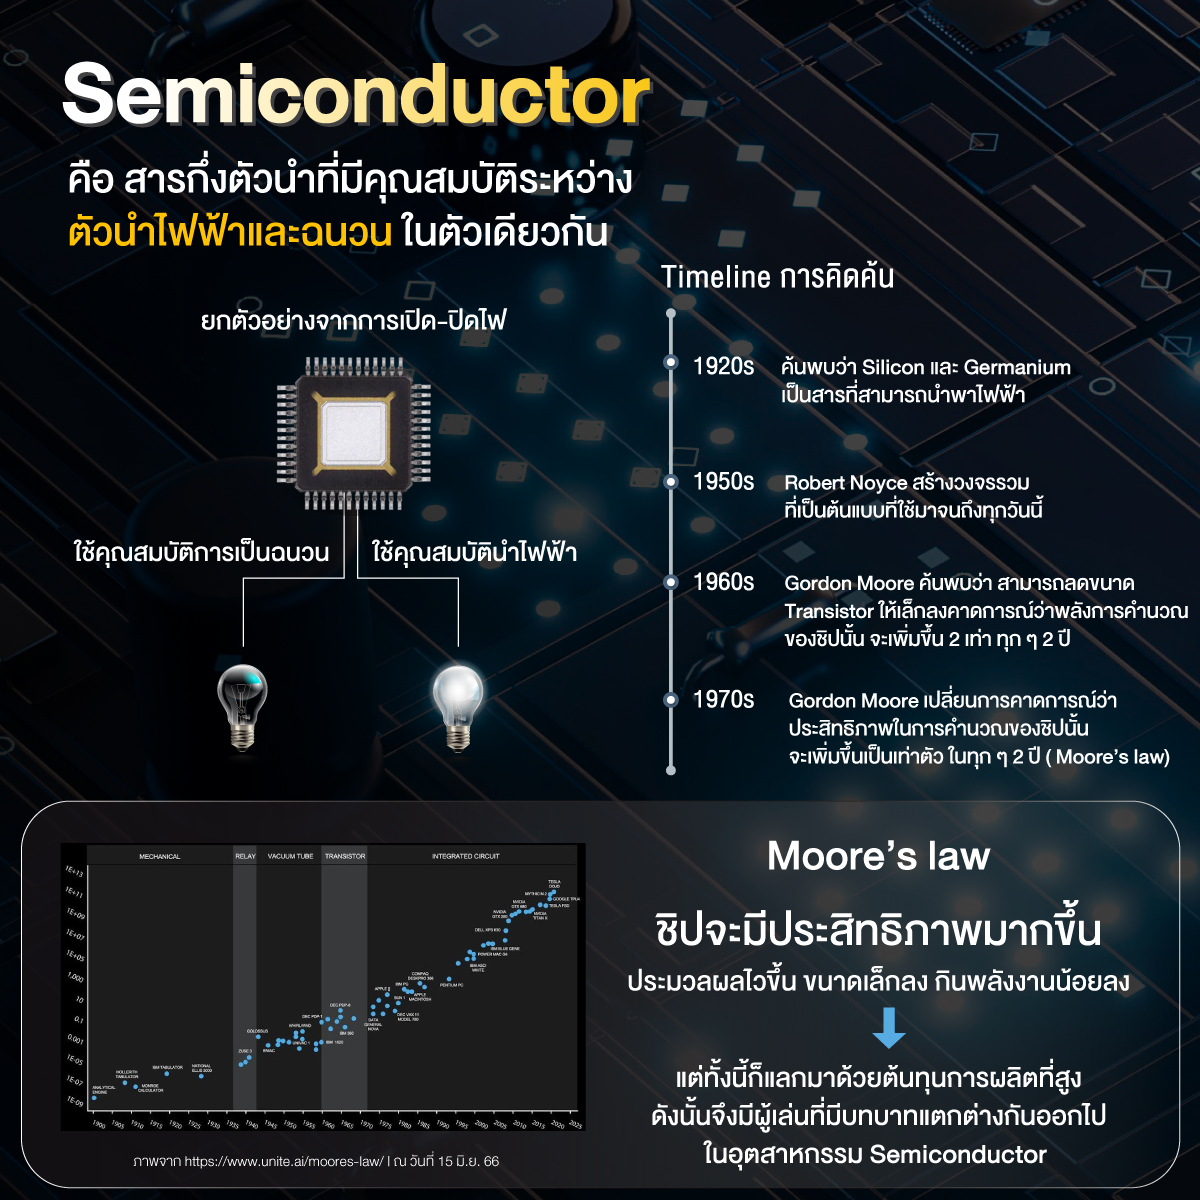 ลงทุน Semiconductor